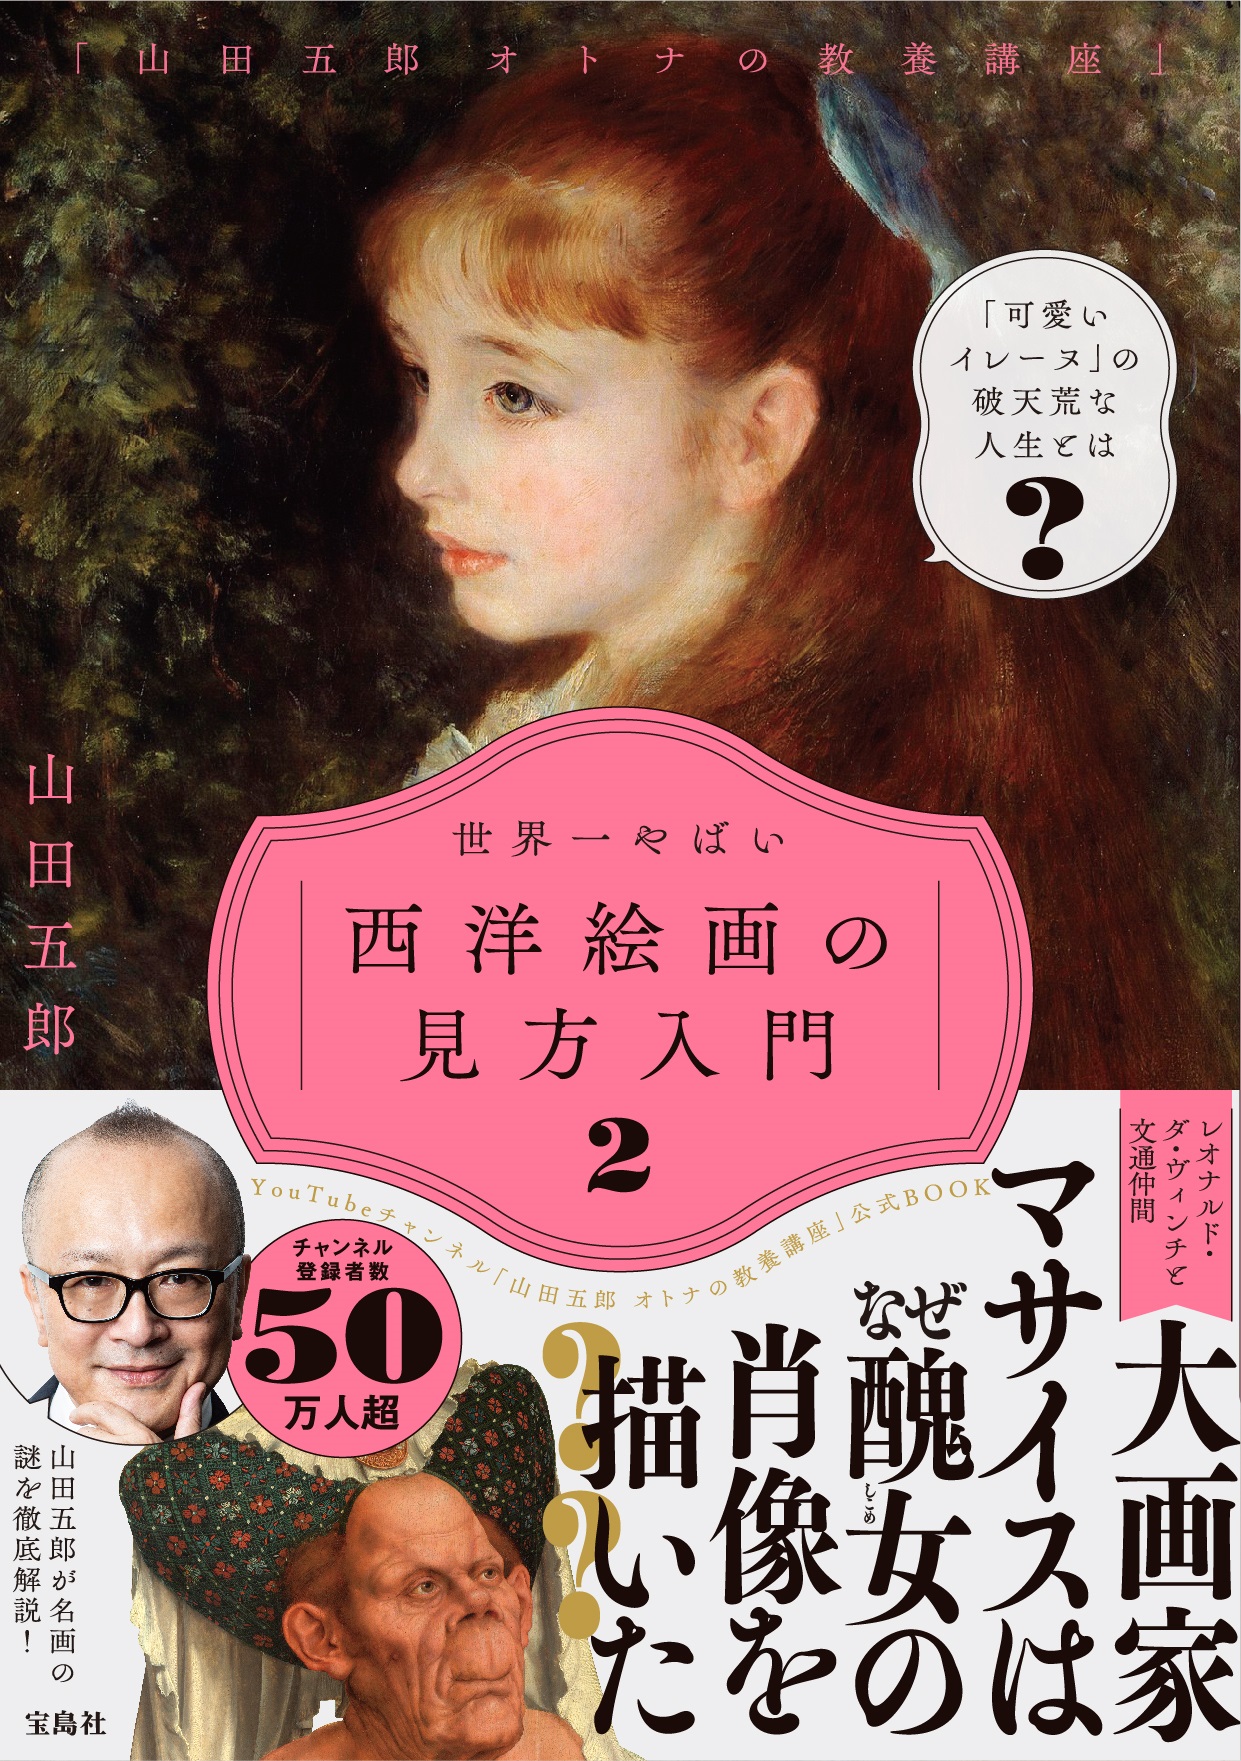 「山田五郎 オトナの教養講座」 世界一やばい西洋絵画の見方入門 2の商品画像